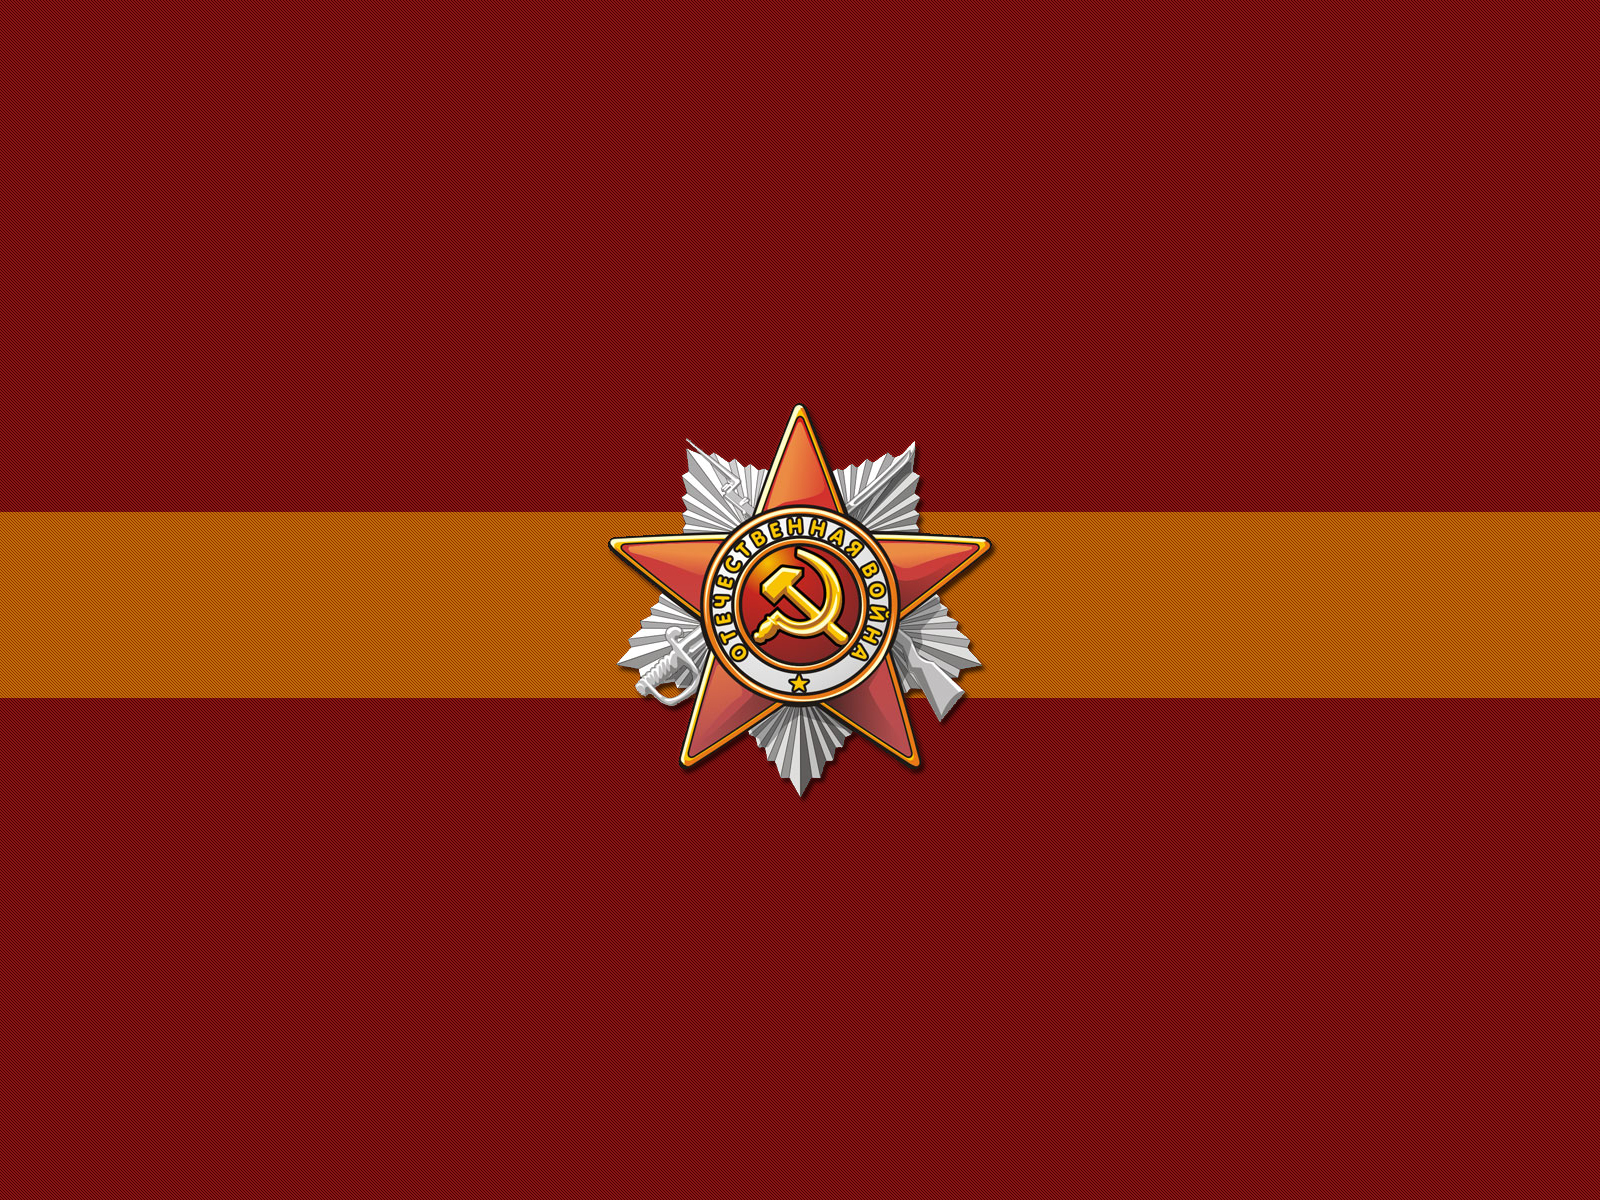 communism wallpaper,flag,red,font,emblem,logo